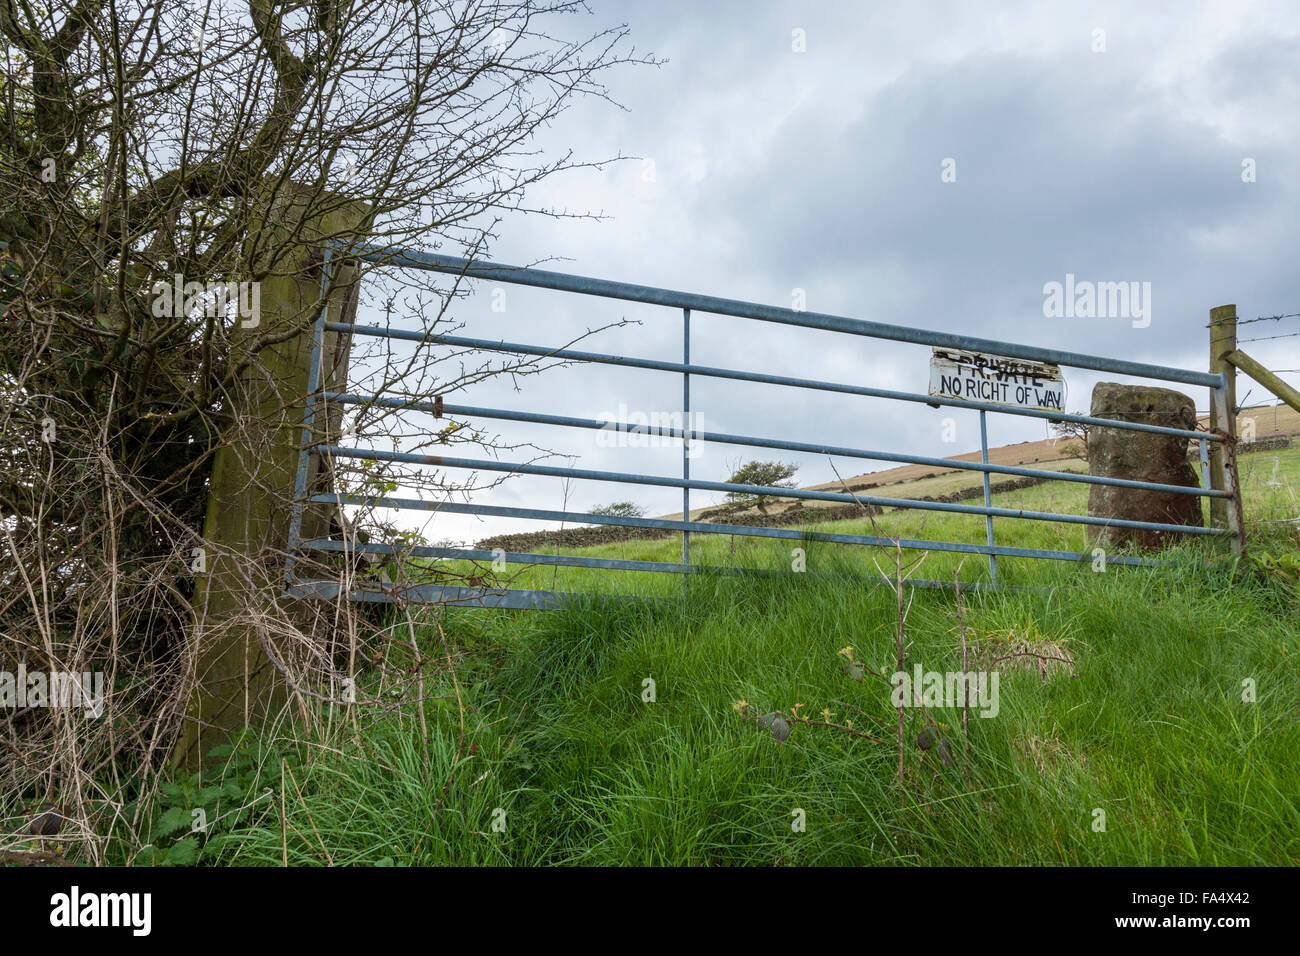 Signe des terres privées. Pas de droit de passage signe sur une ferme, Peak District, Derbyshire, Angleterre, RU Banque D'Images